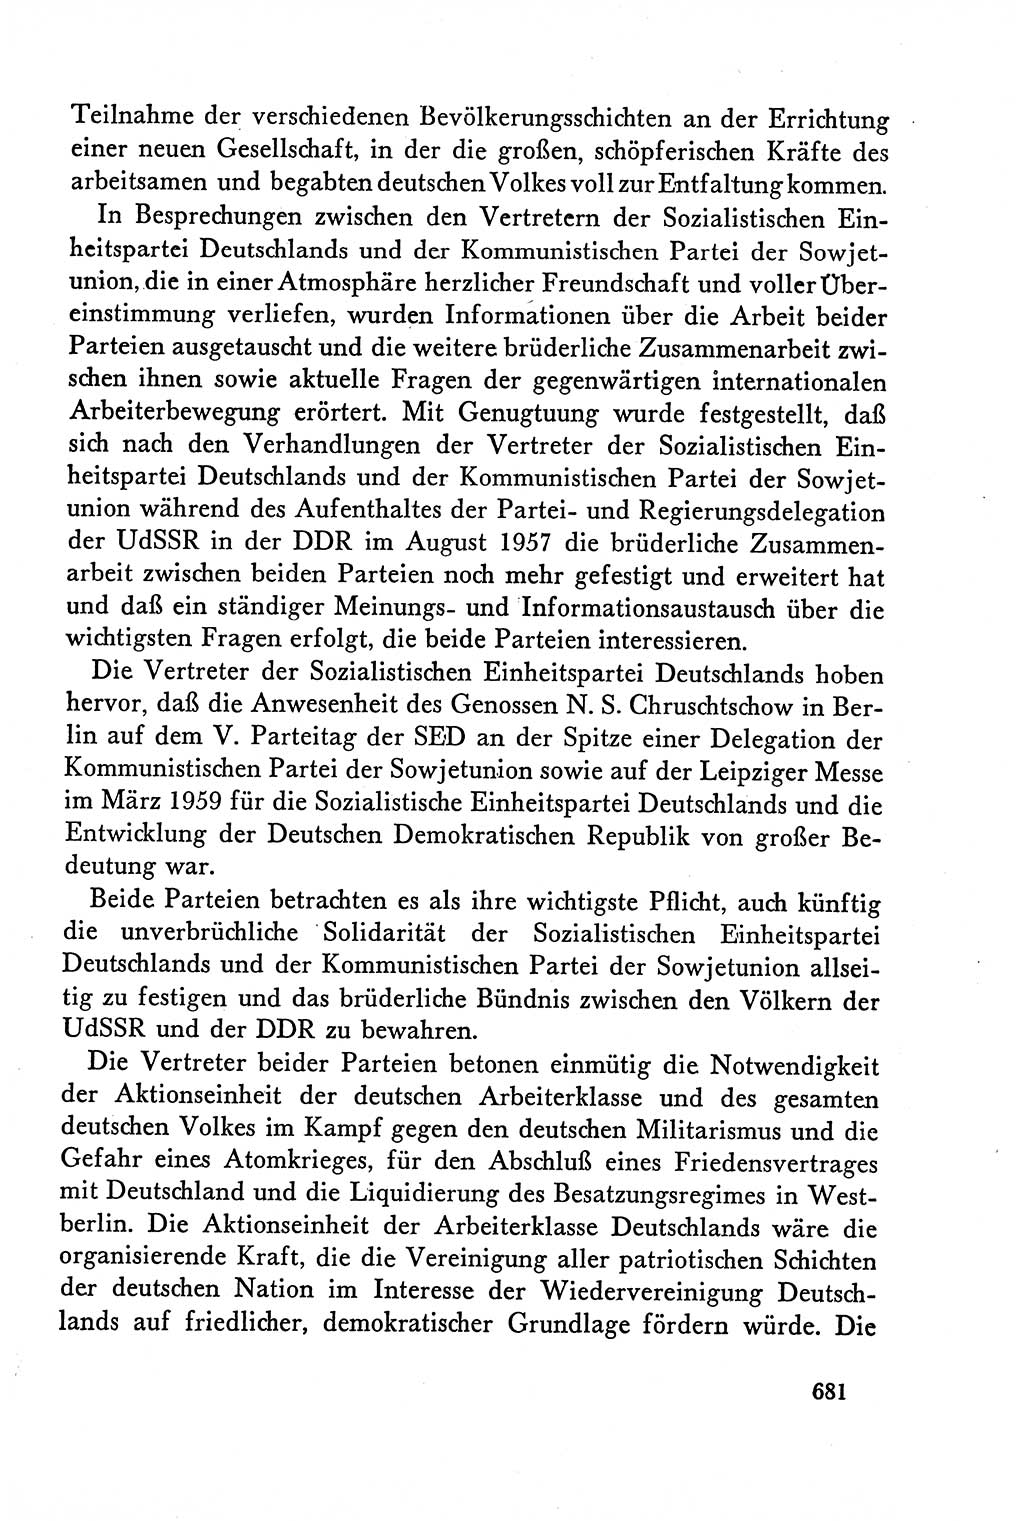 Dokumente der Sozialistischen Einheitspartei Deutschlands (SED) [Deutsche Demokratische Republik (DDR)] 1958-1959, Seite 681 (Dok. SED DDR 1958-1959, S. 681)